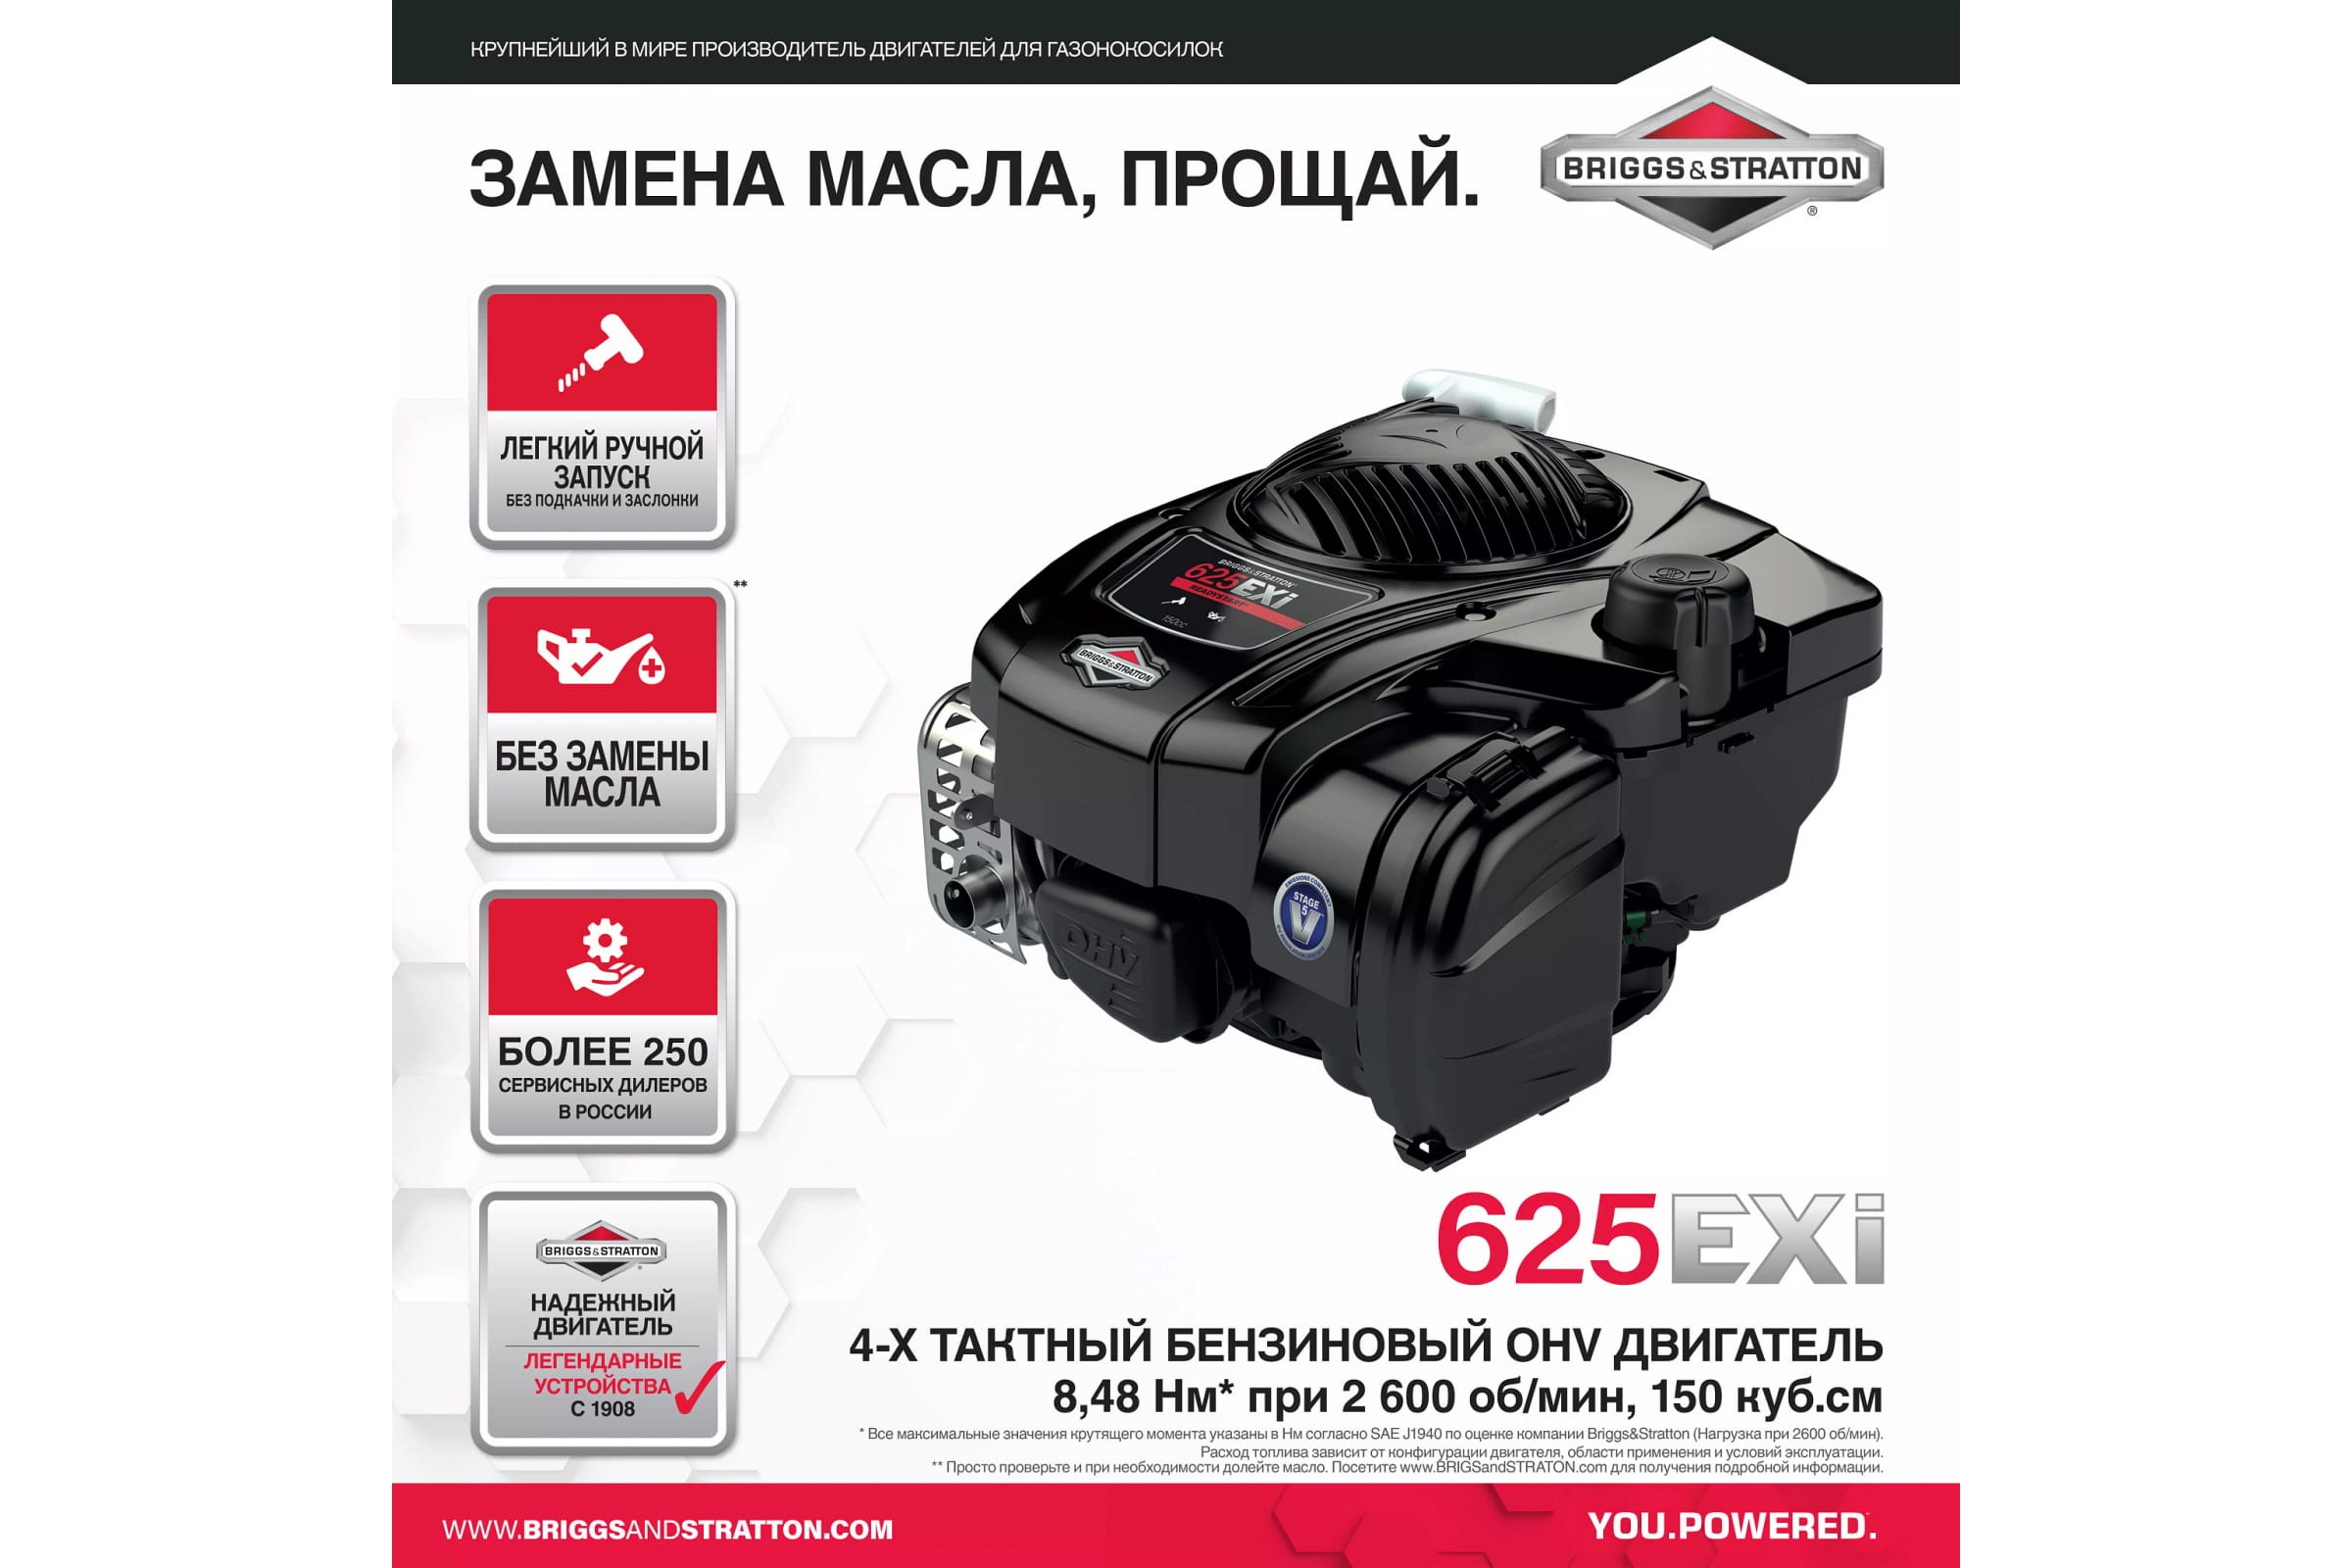 Газонокосилка Makita PLM5120N2 купить по низкой цене в Москве в  интернет-магазине Pacs.ru